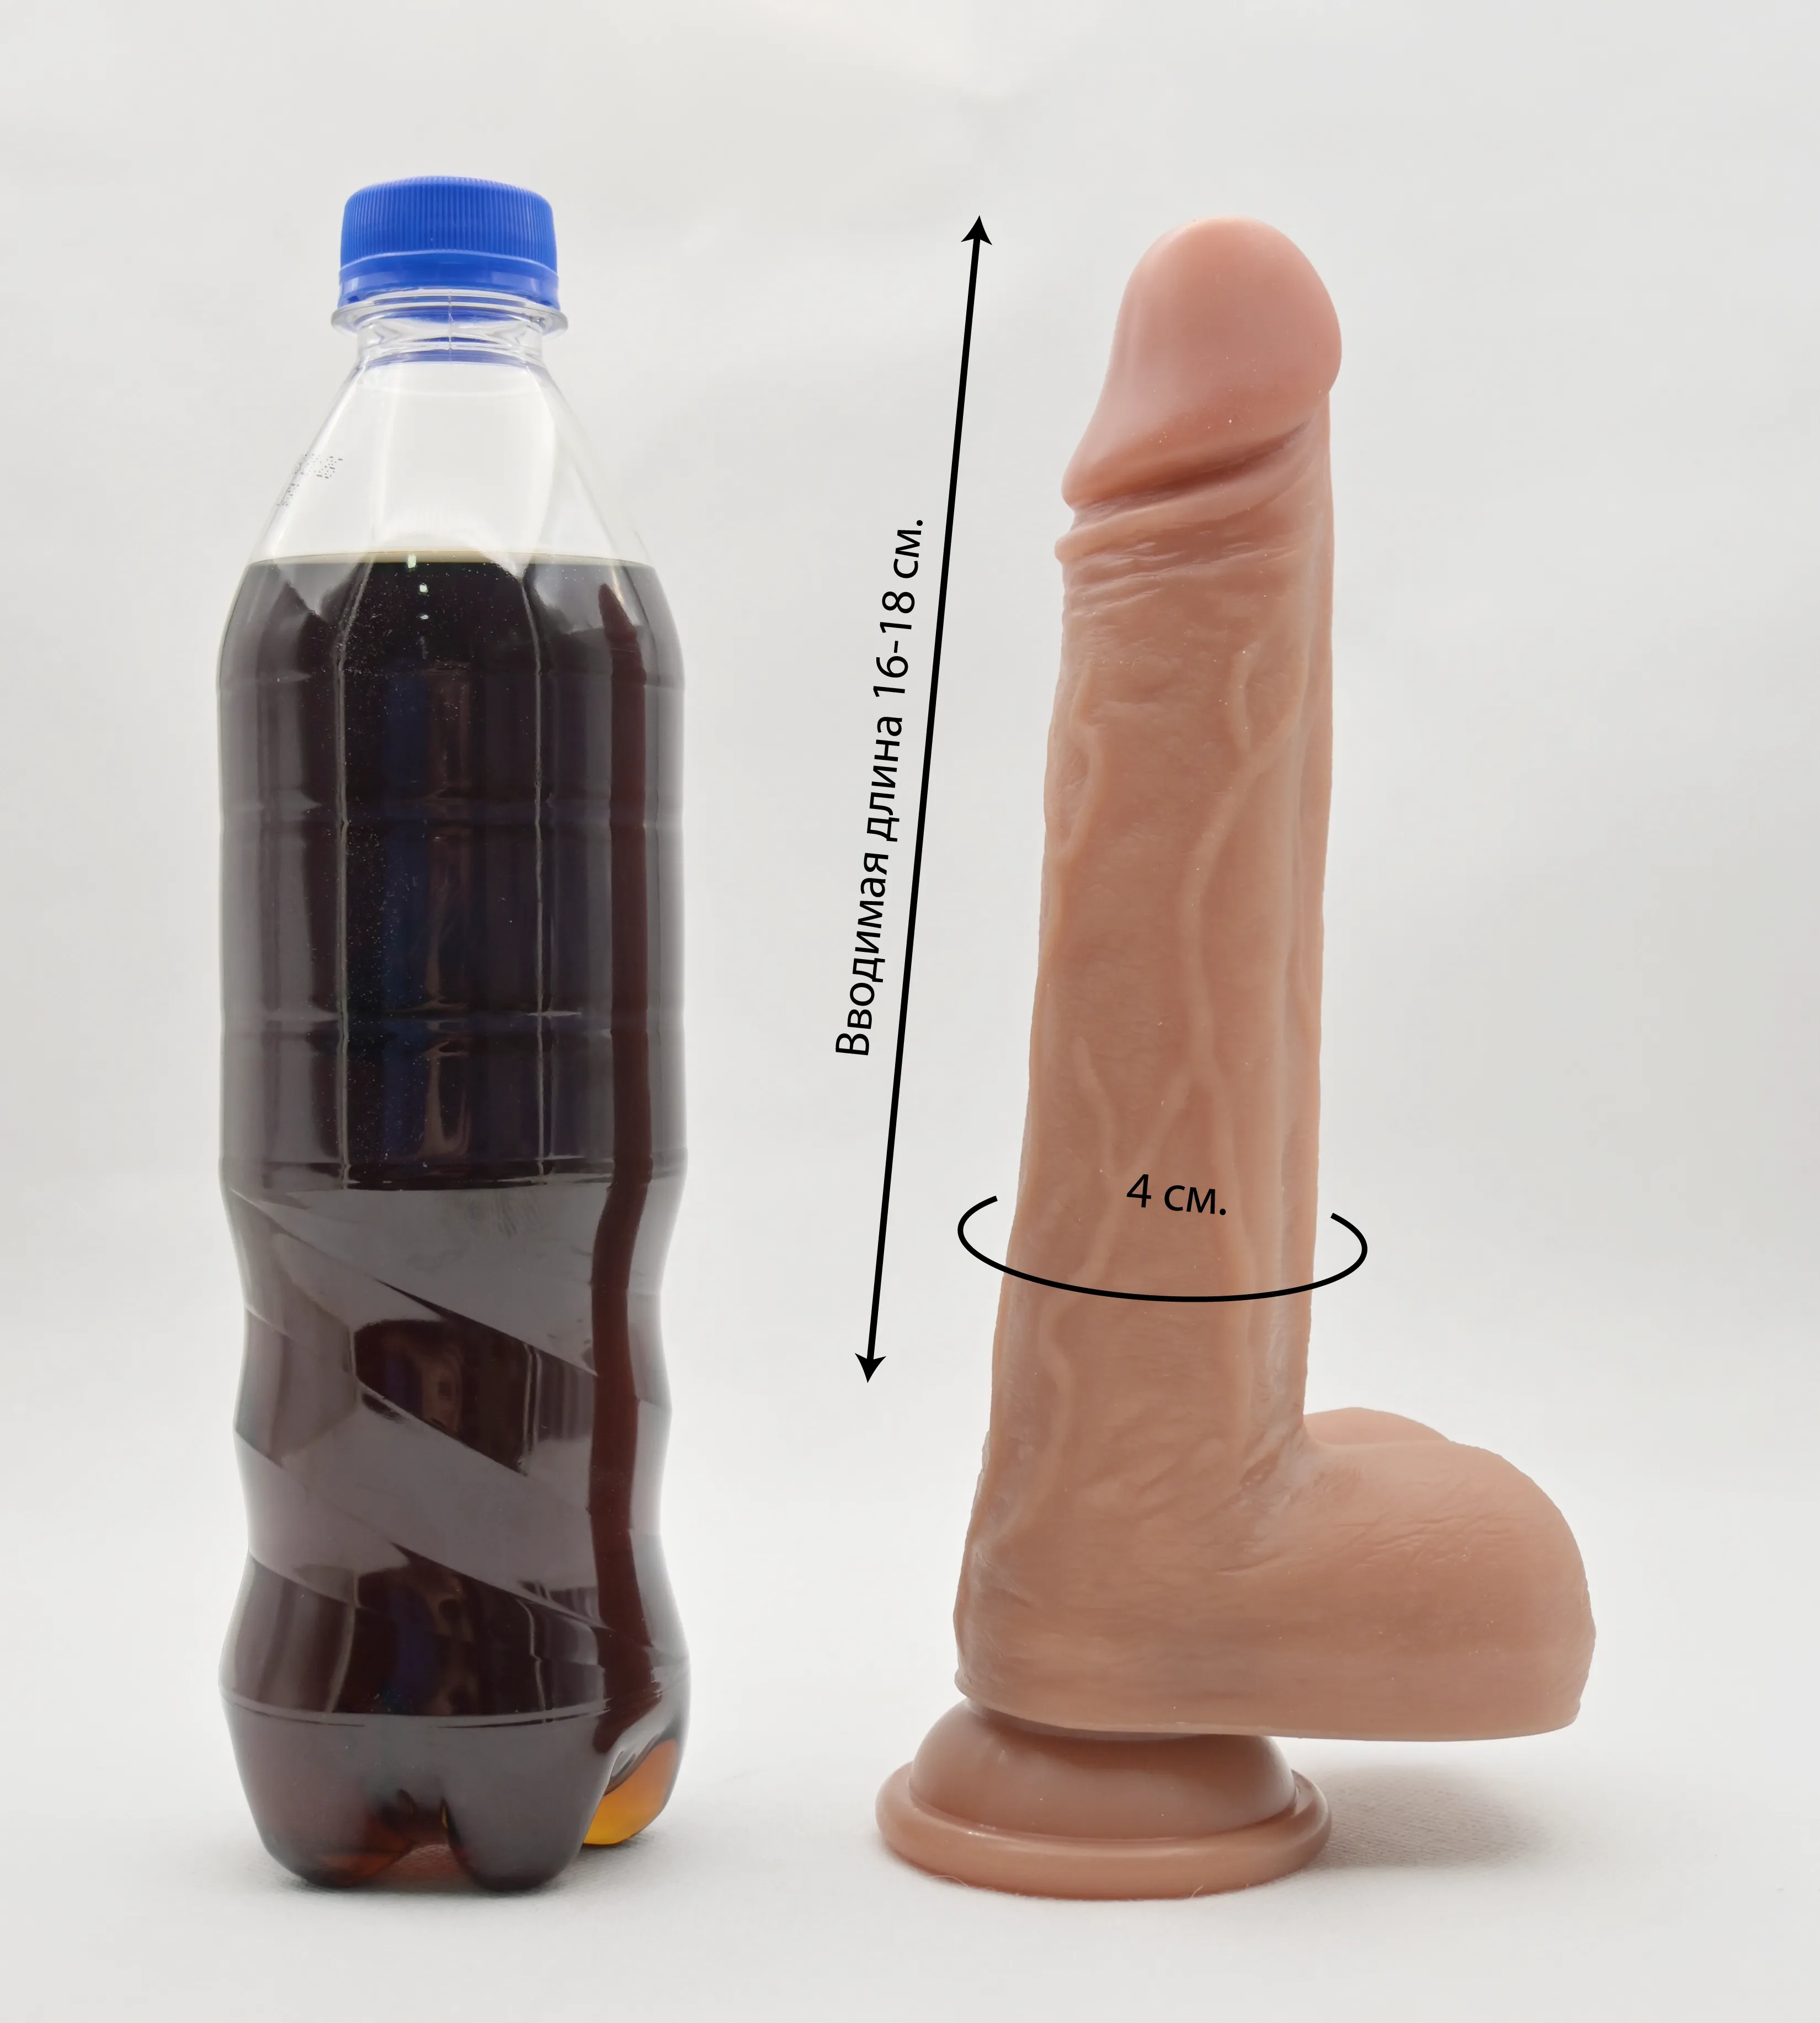 Размеры и сравнение Harmonica с бутылкой газировки 0,5 л.